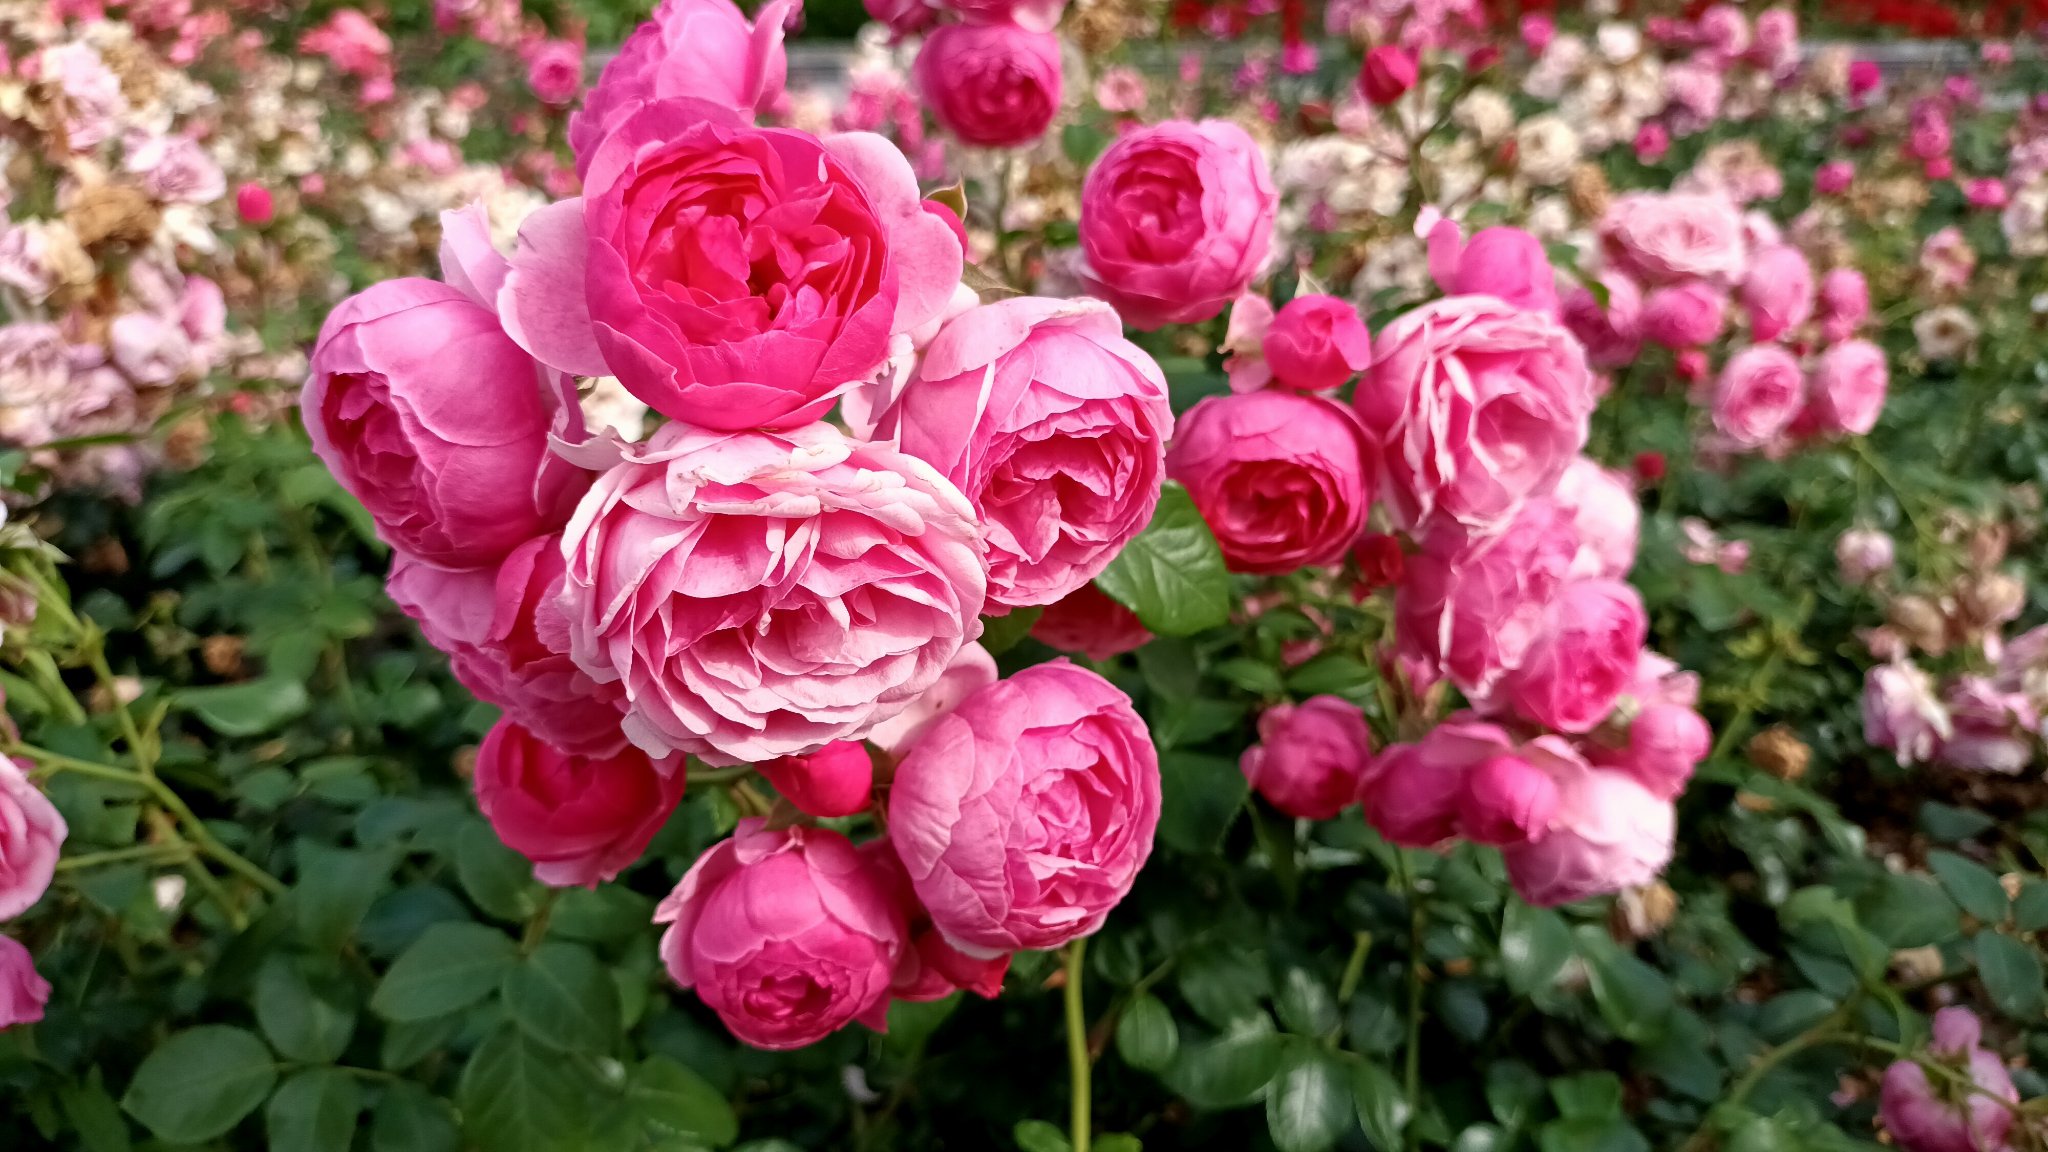 ZZM usuwa przekwitnięte kwiaty w Rosarium – to zabieg związany nie tylko z estetyką